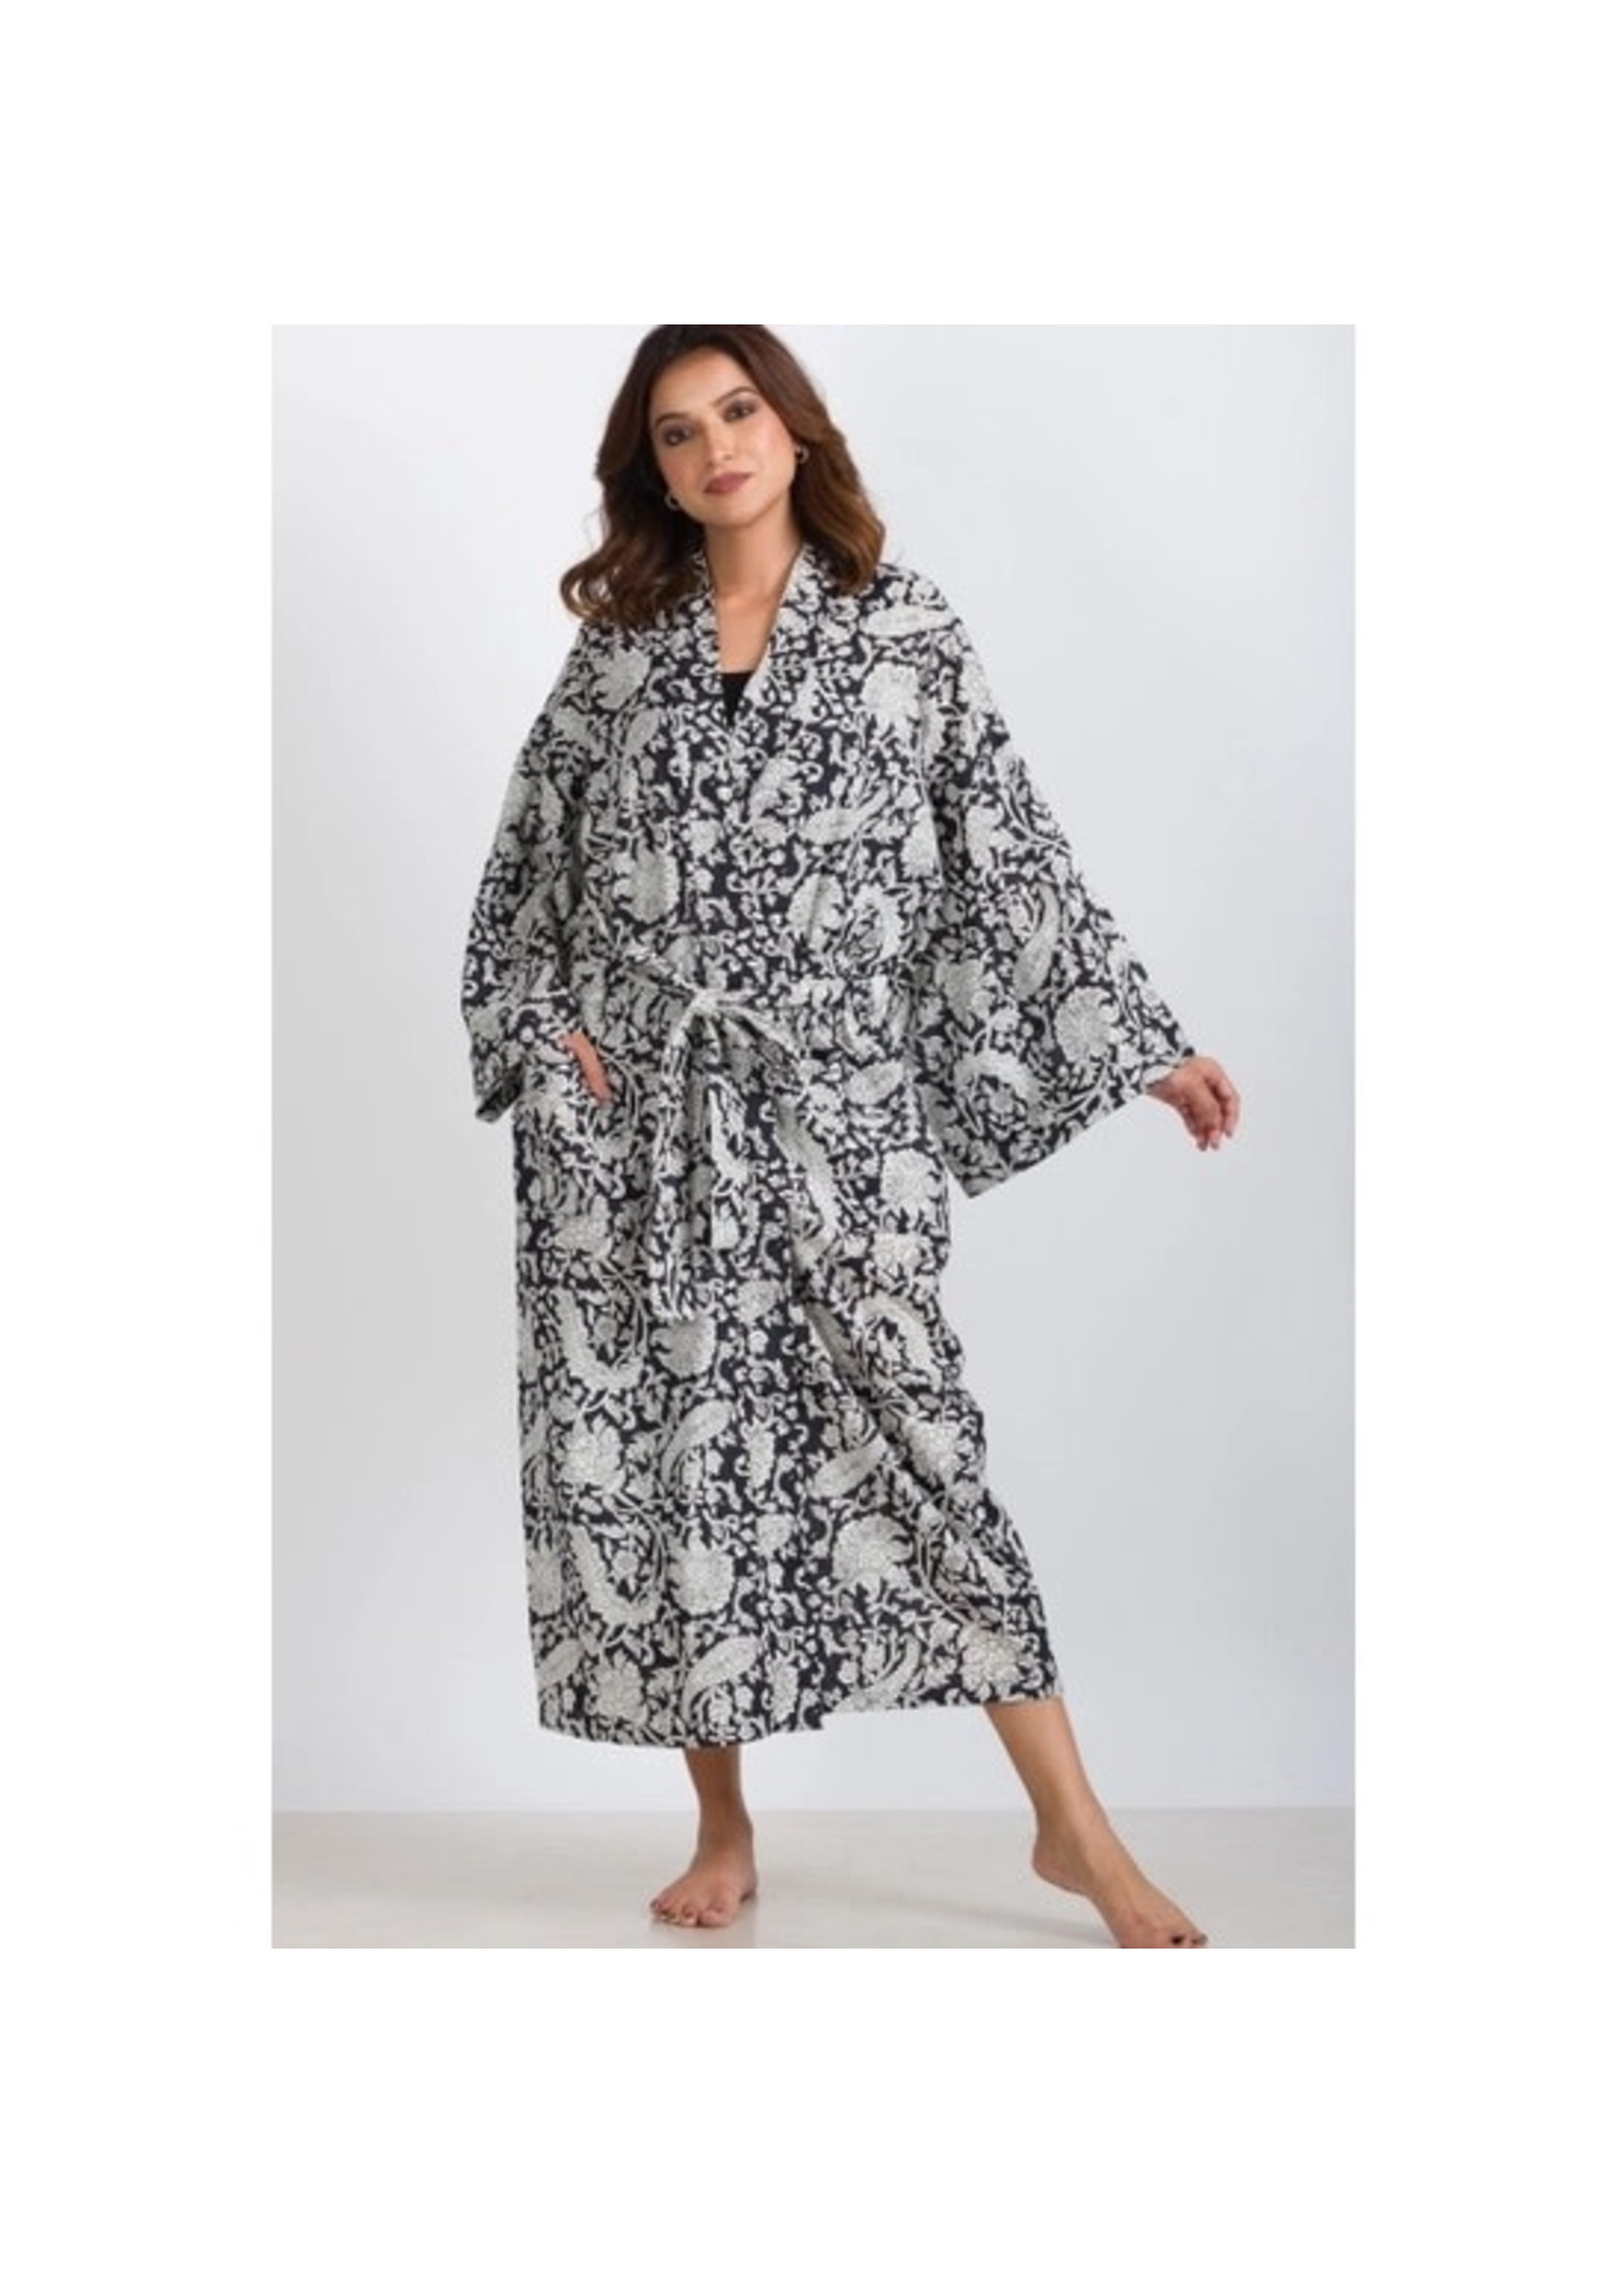 Robe - Long Kimono Cotton Black & White Paisley